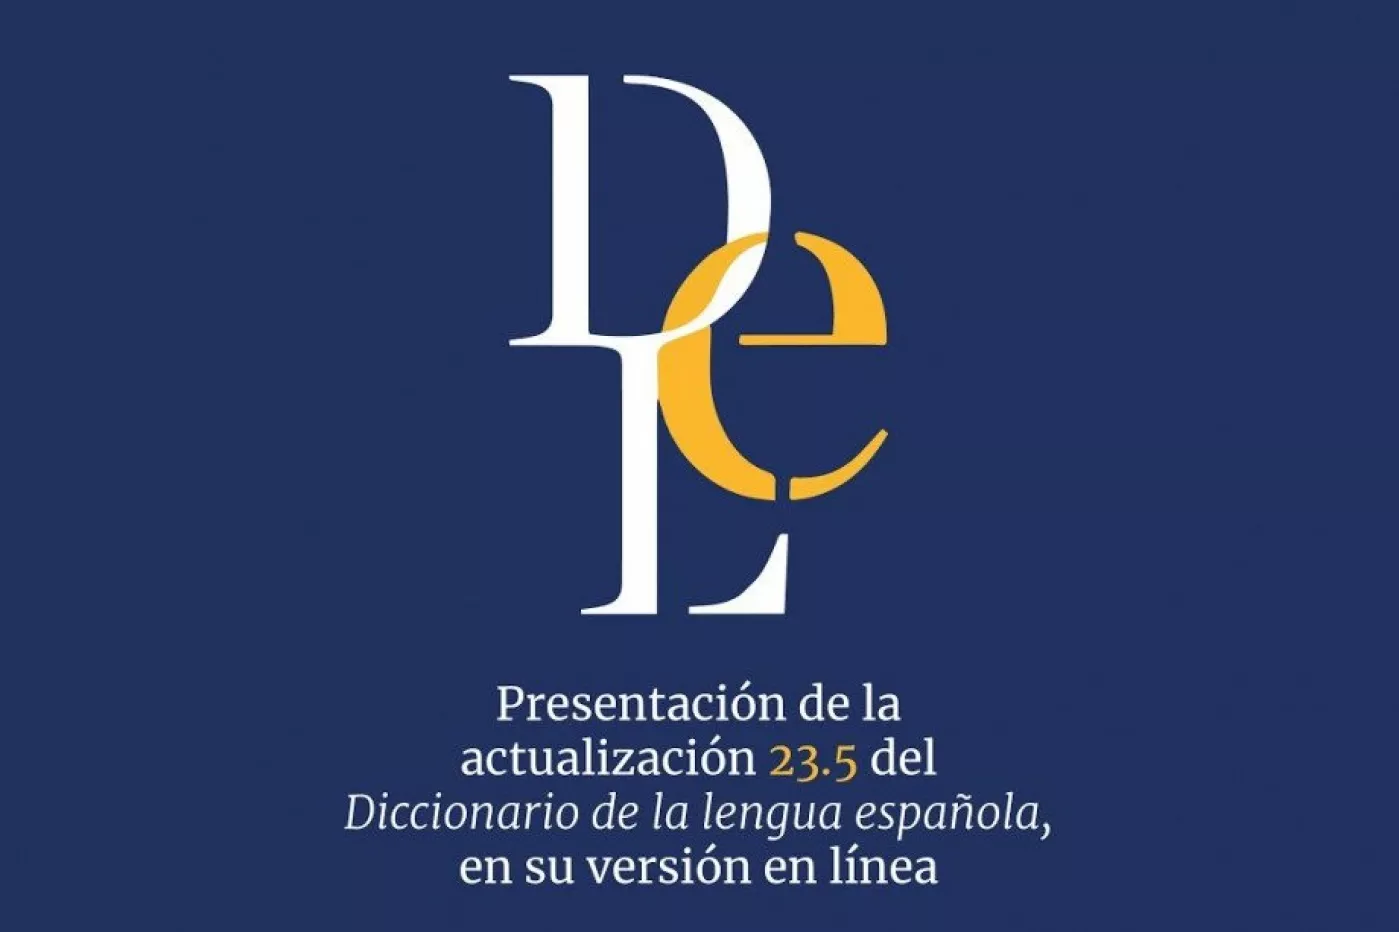 Actualización 23.5 del 'Diccionario de la lengua española', en su versión en línea.